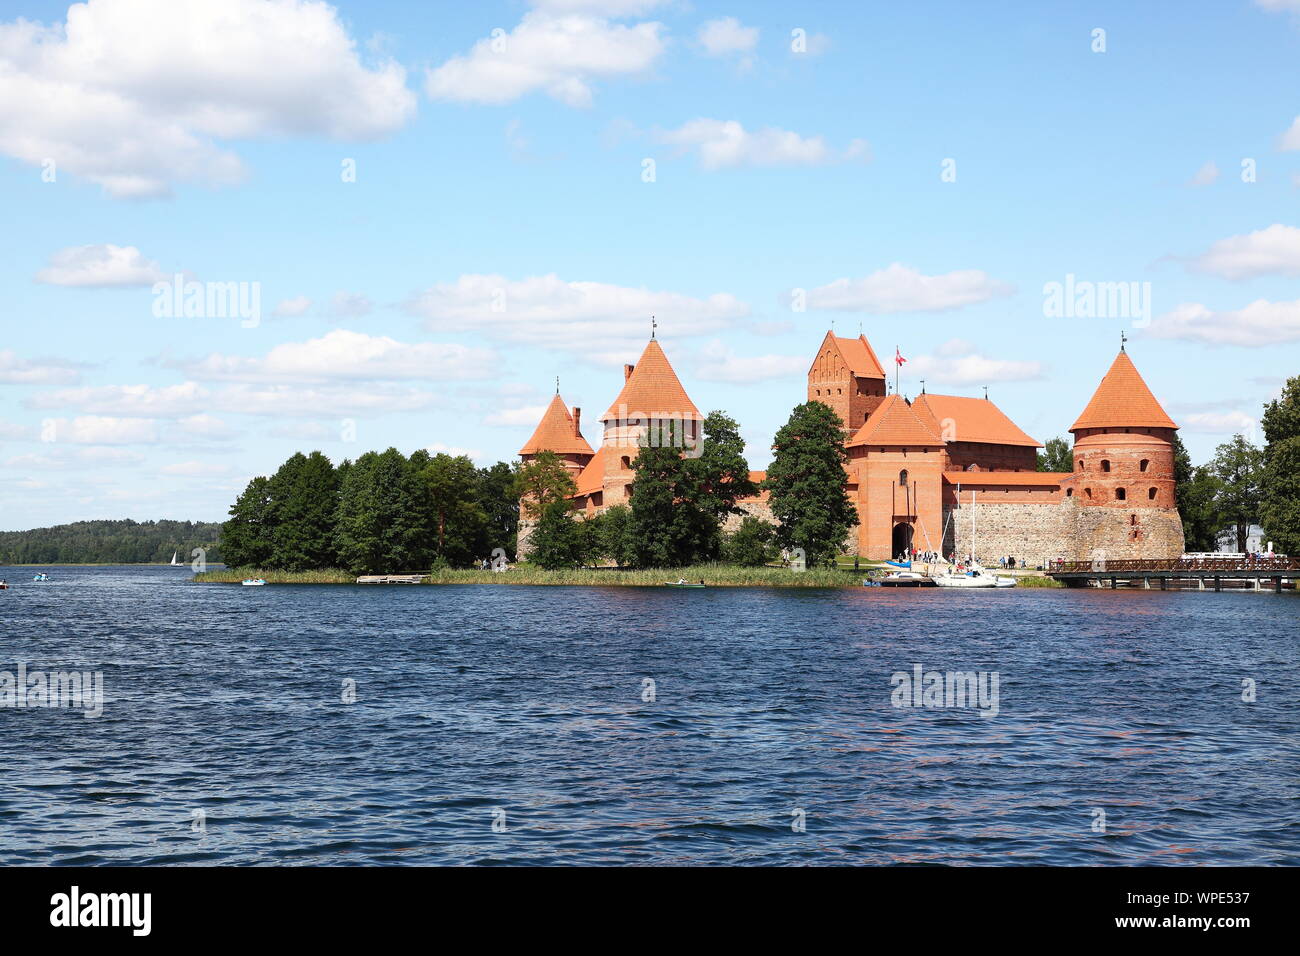 Trakai Castle located on Lake Galve in Trakai, Lithuania Stock Photo